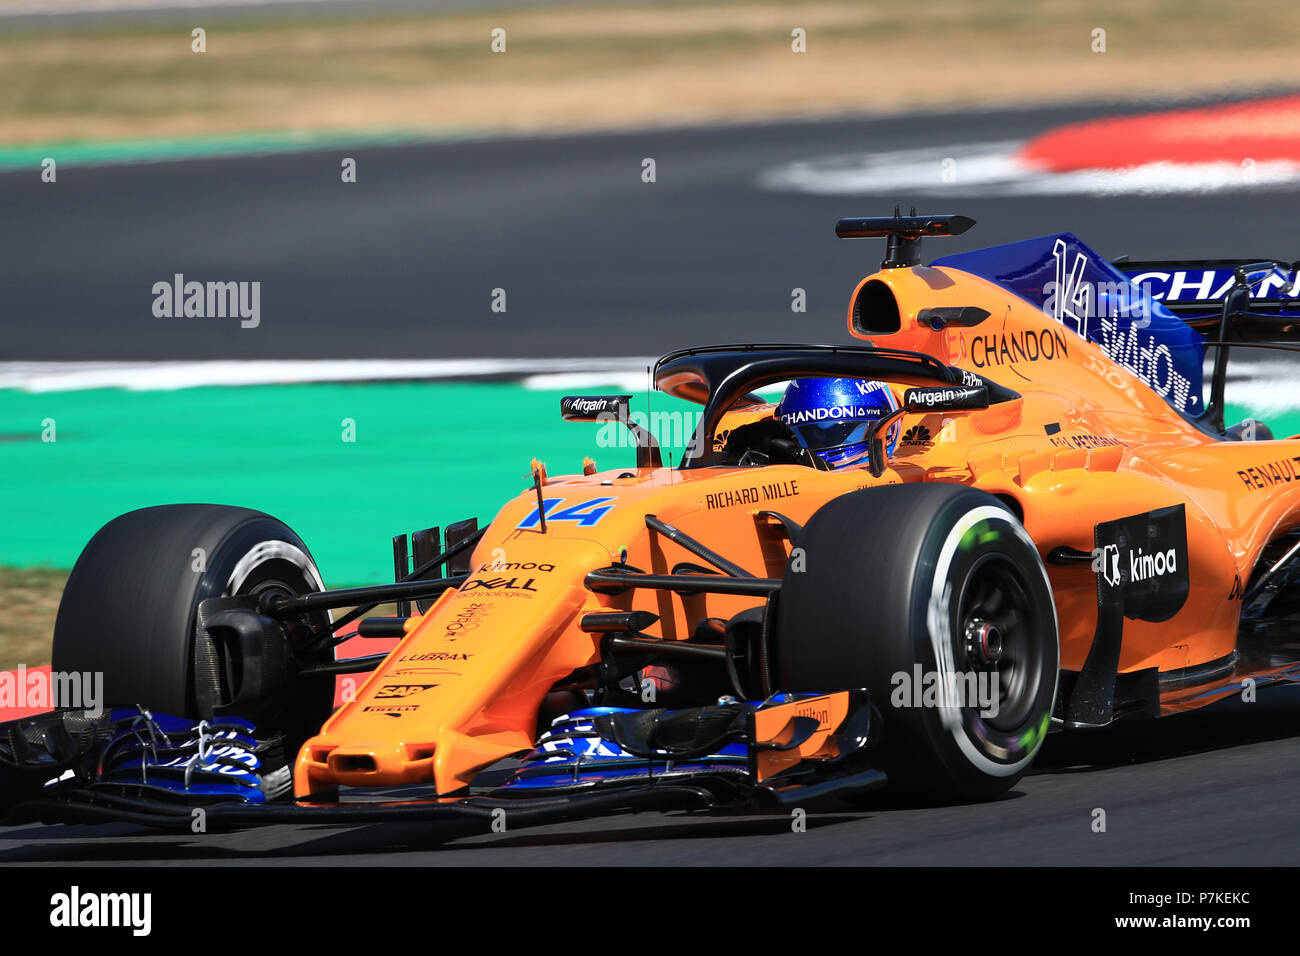 Silverstone Circuit, Silverstone, Großbritannien. 6. Juli, 2018. Britische Formel 1 Grand Prix, Freitag Freies Training; McLaren, Fernando Alonso Credit: Aktion plus Sport/Alamy leben Nachrichten Stockfoto